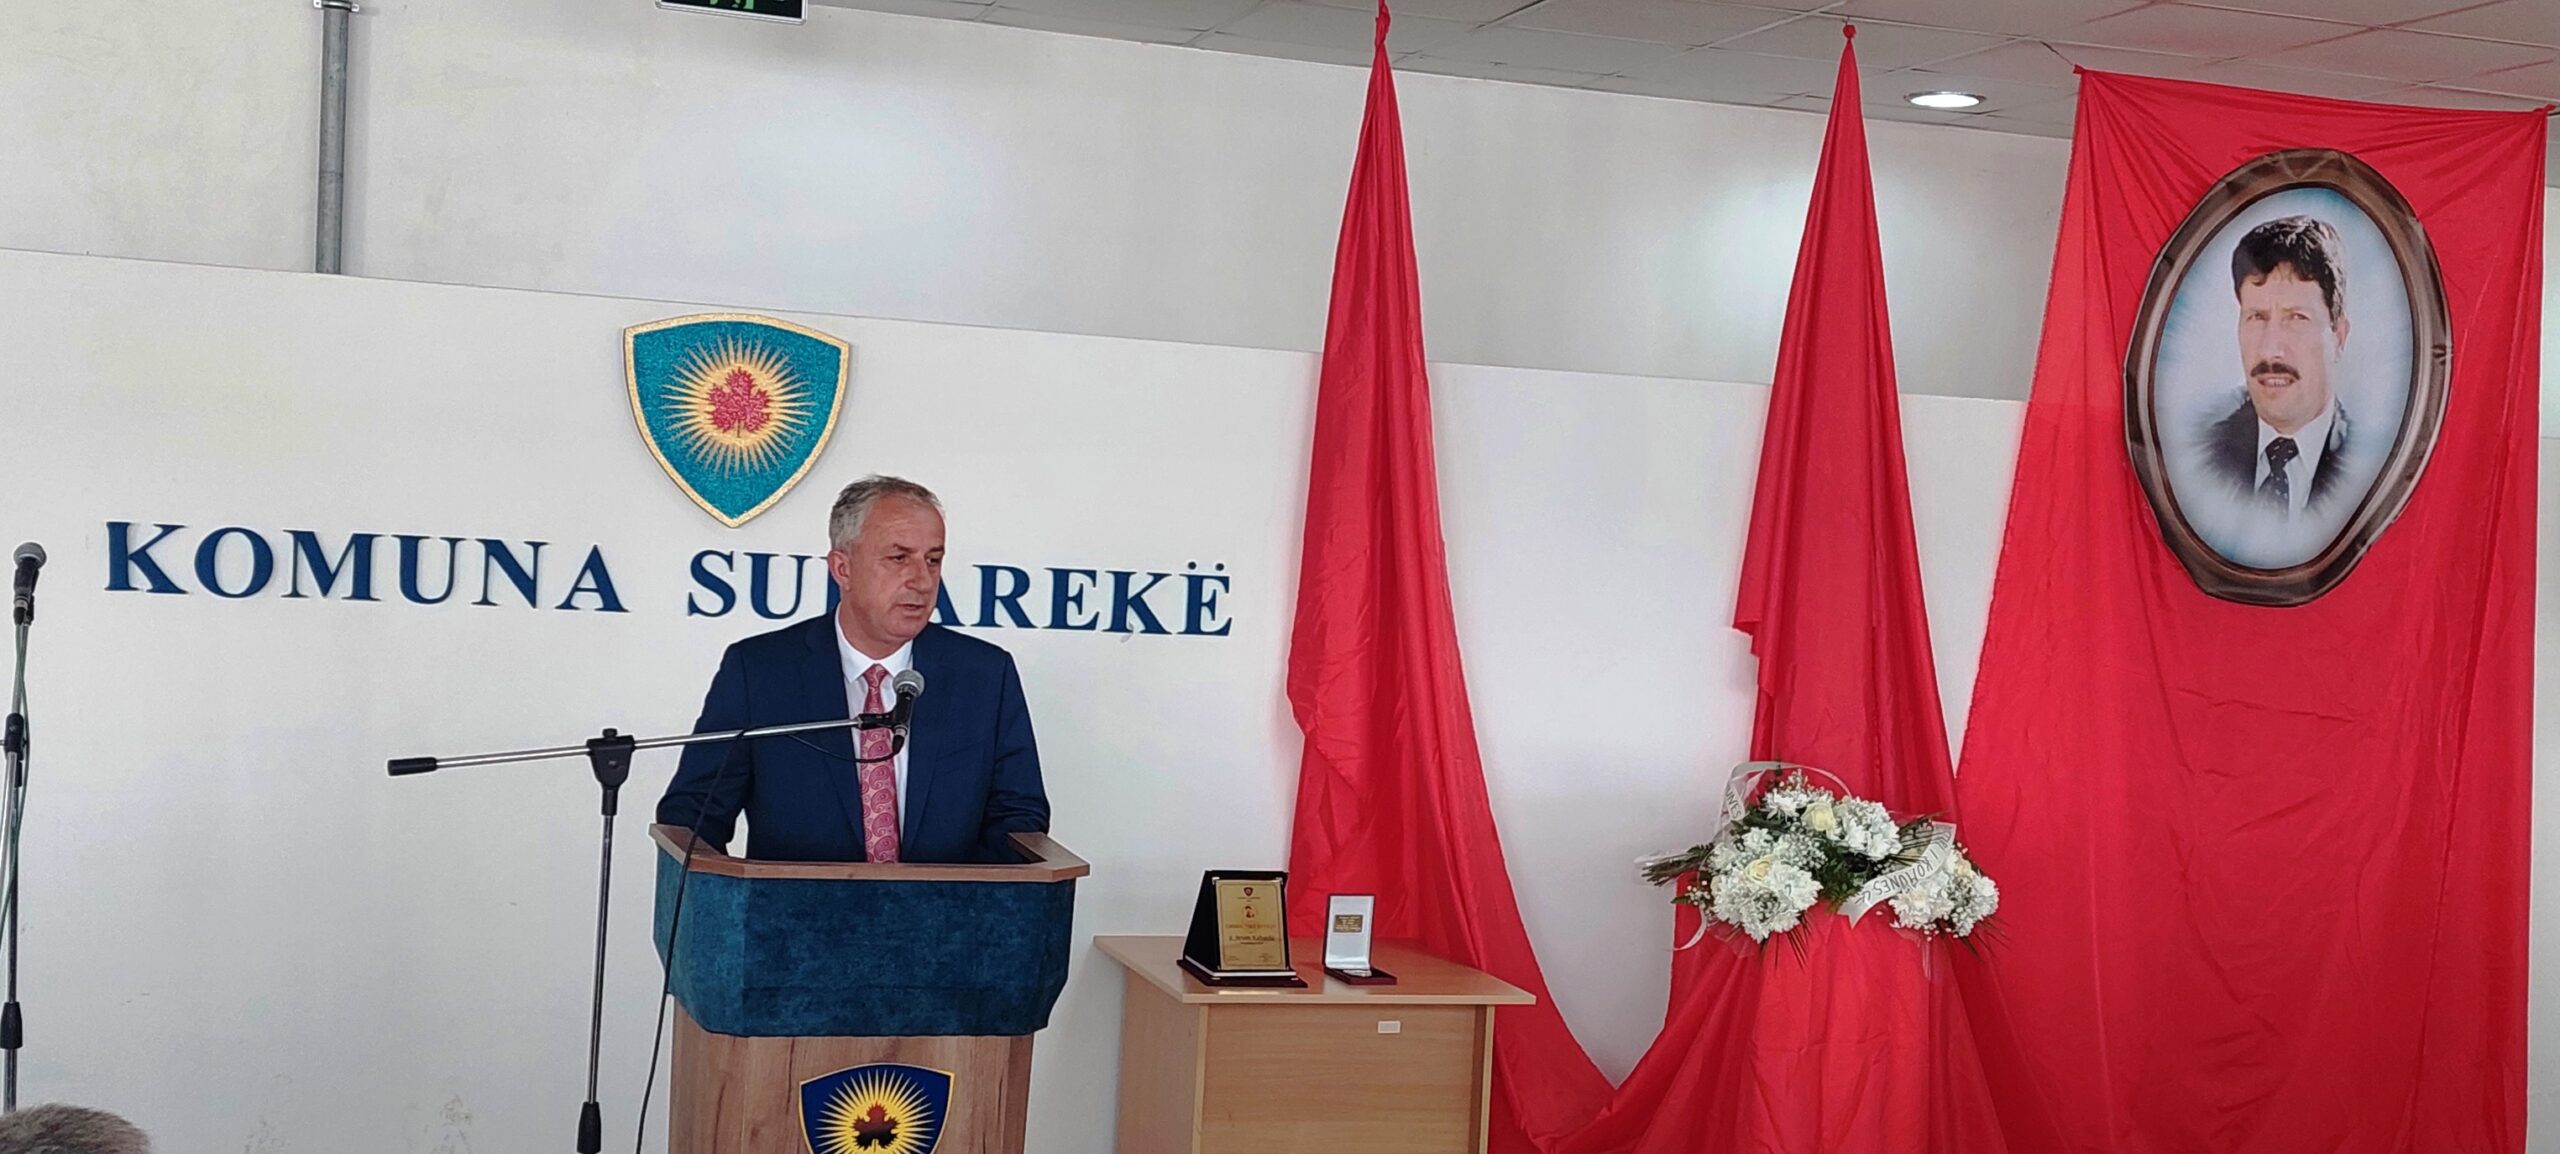 Përkujtohet ish-kryetari i Komunës së Suharekës, Ukë Bytyçi